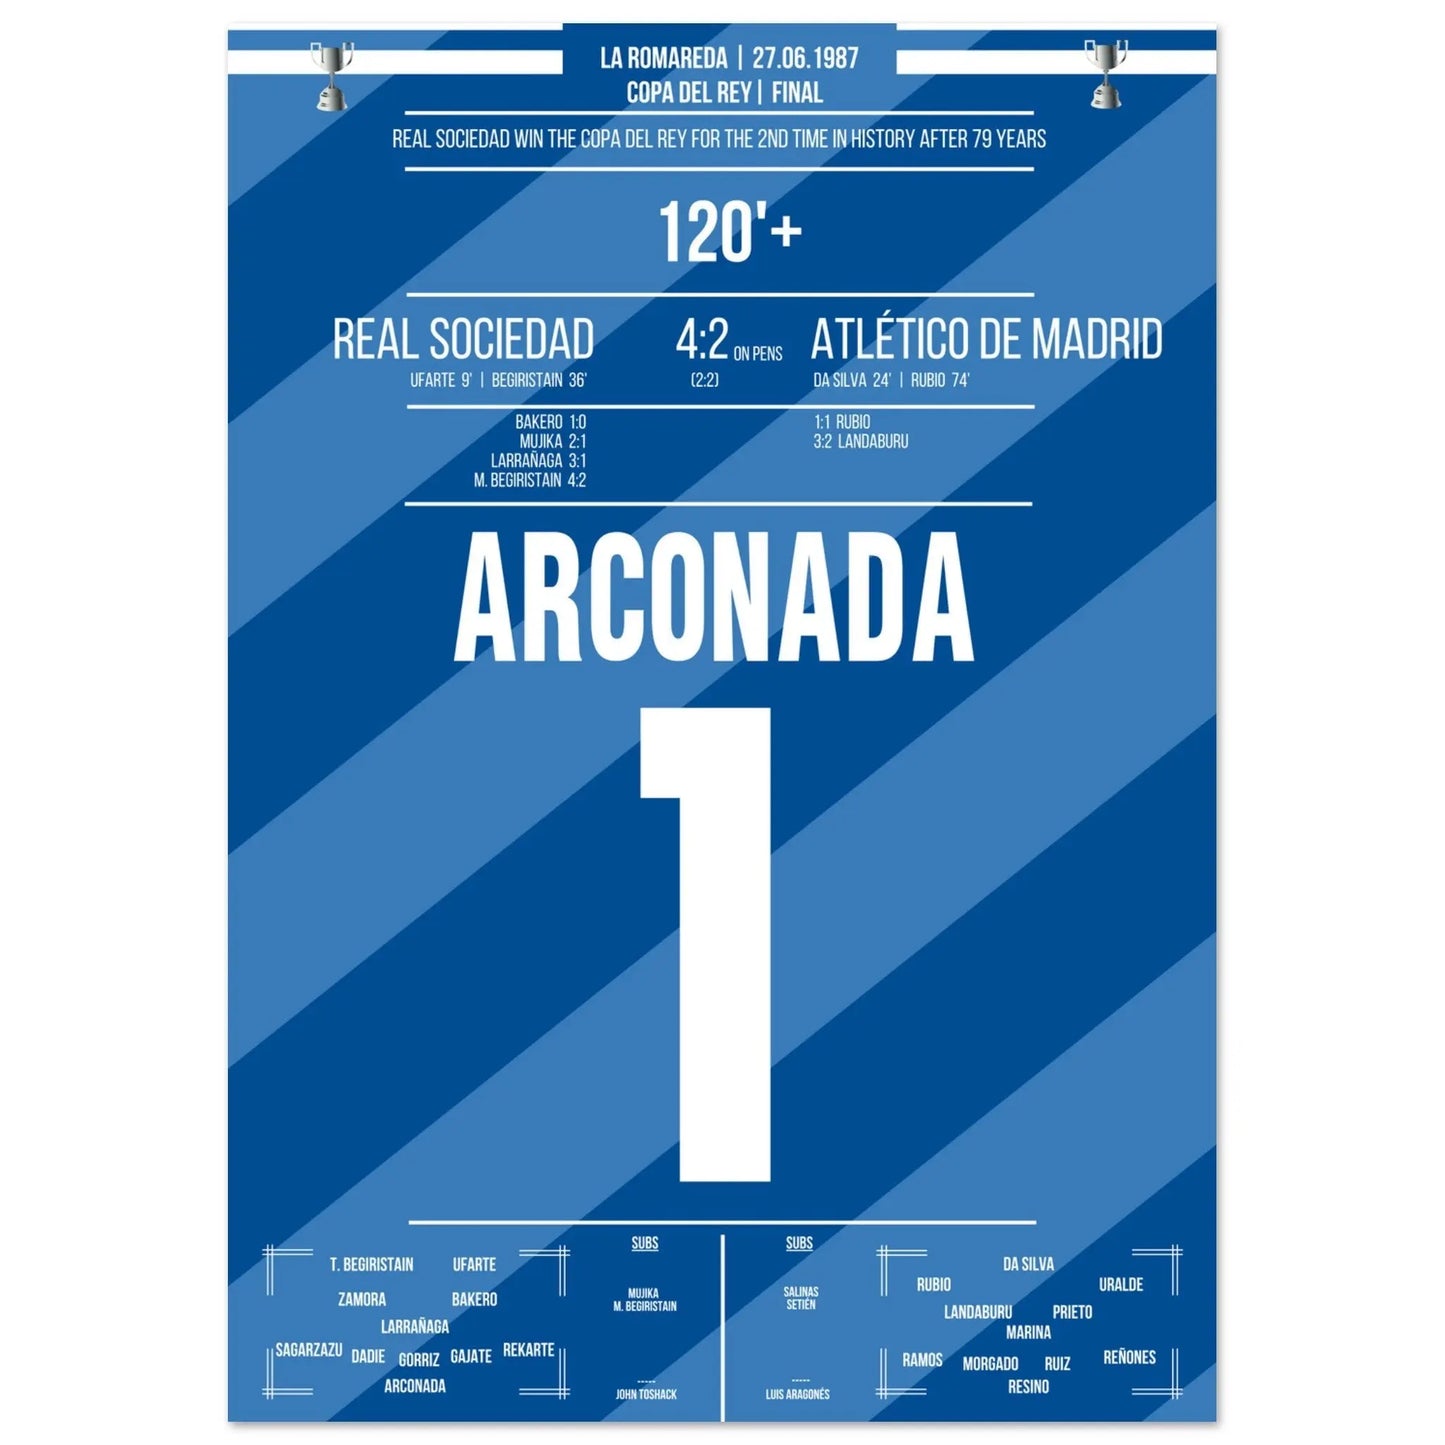 Luis Arconada redt de beslissende penalty en kroont Real Sociedad tot winnaar van de Copa Del Rey van 1987